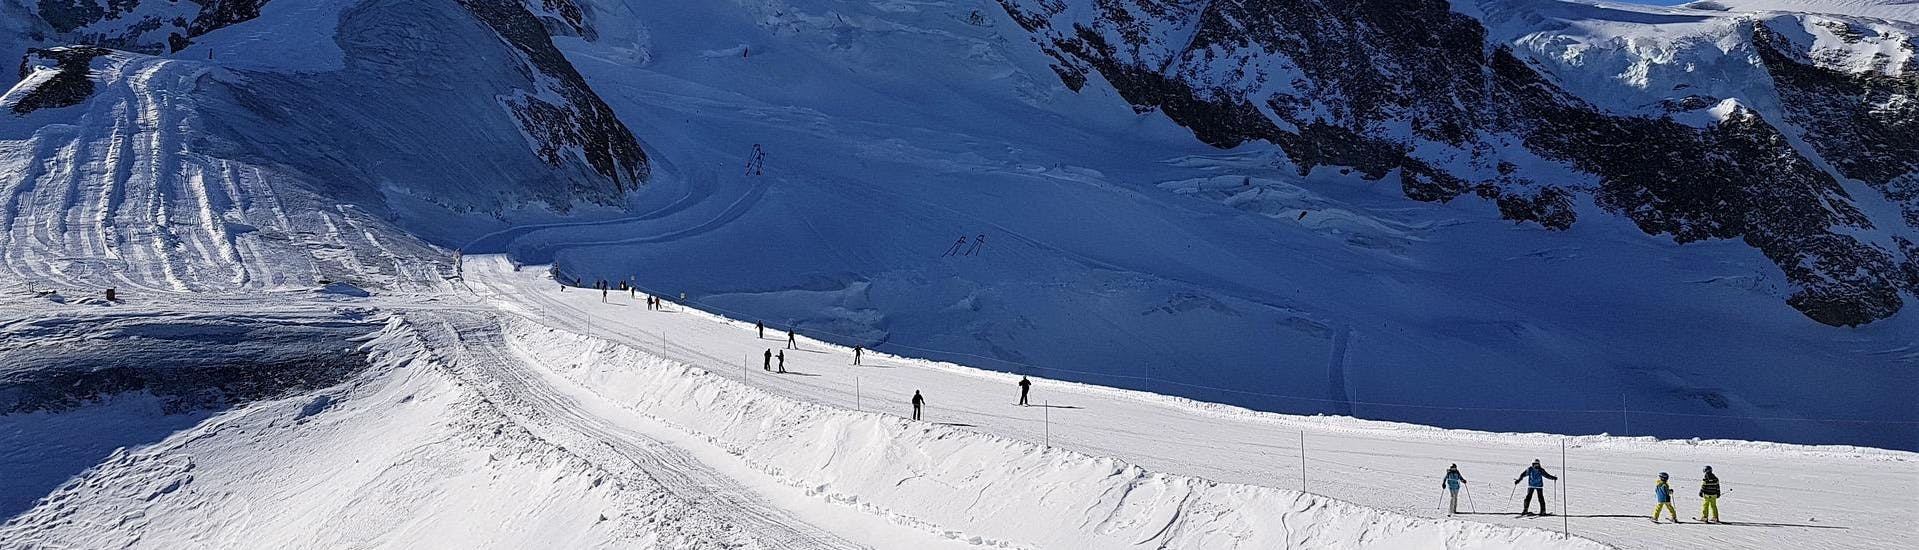 Vue sur un paysage de montagne ensoleillé lors d'un cours de ski avec l'une des écoles de ski de la station de ski Saas Fee.